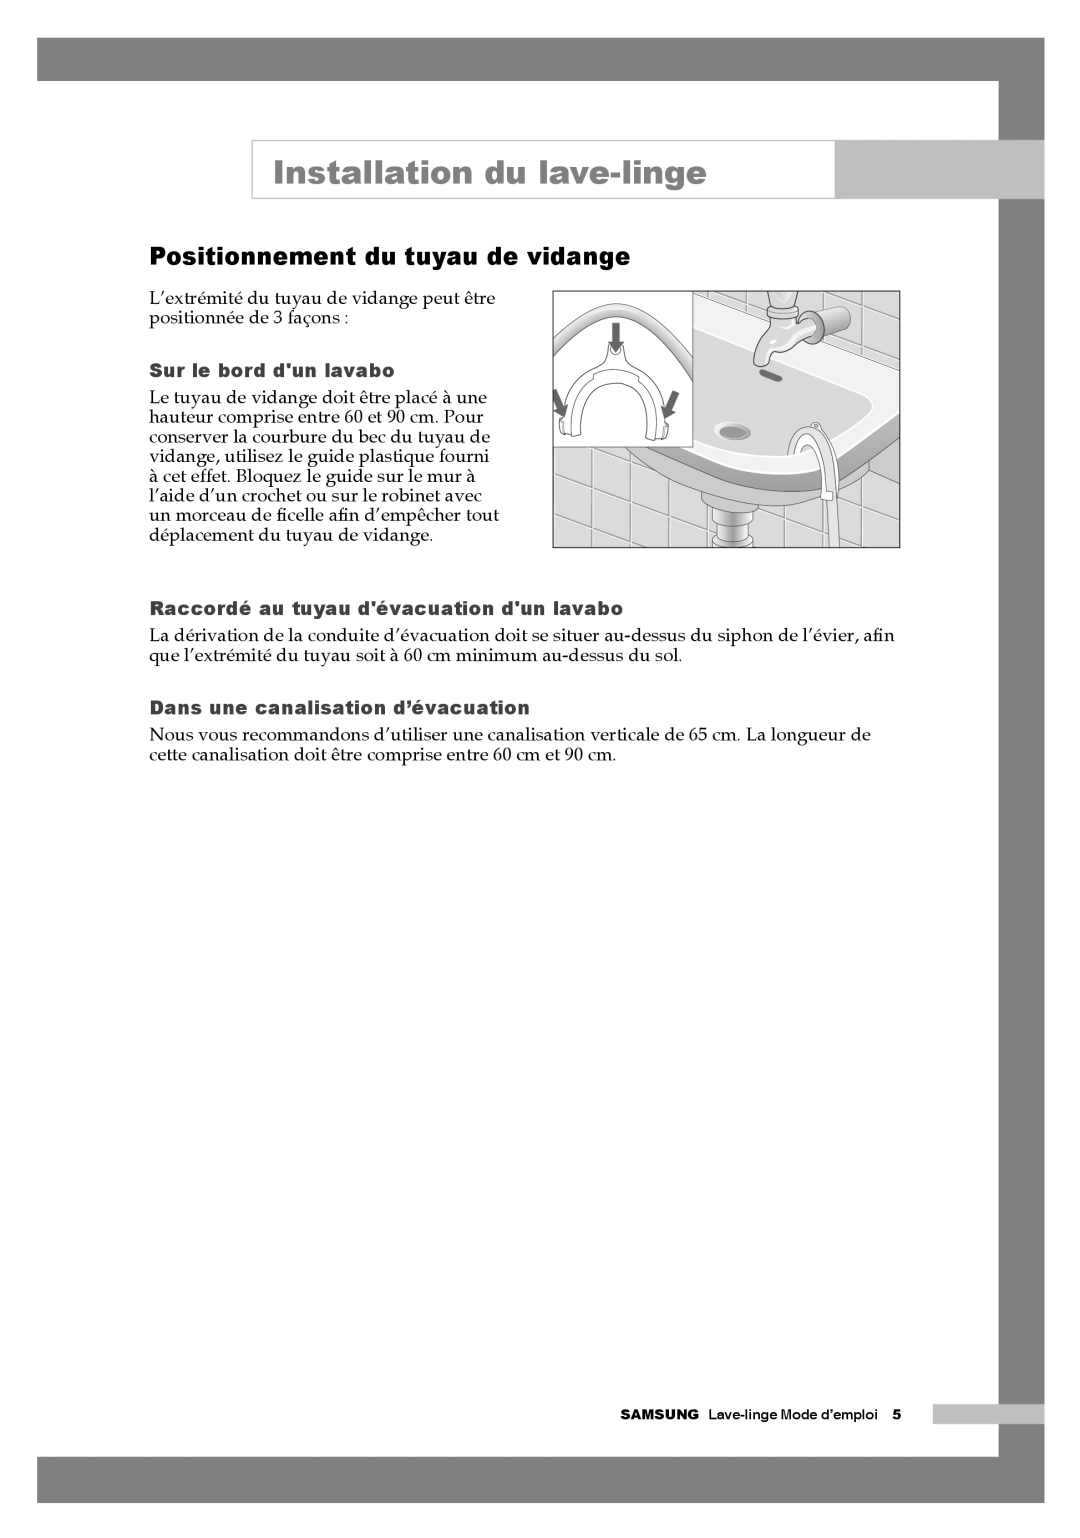 Samsung Q1457AVGS1/XEF manual Positionnement du tuyau de vidange, Installation du lave-linge, Sur le bord dun lavabo 